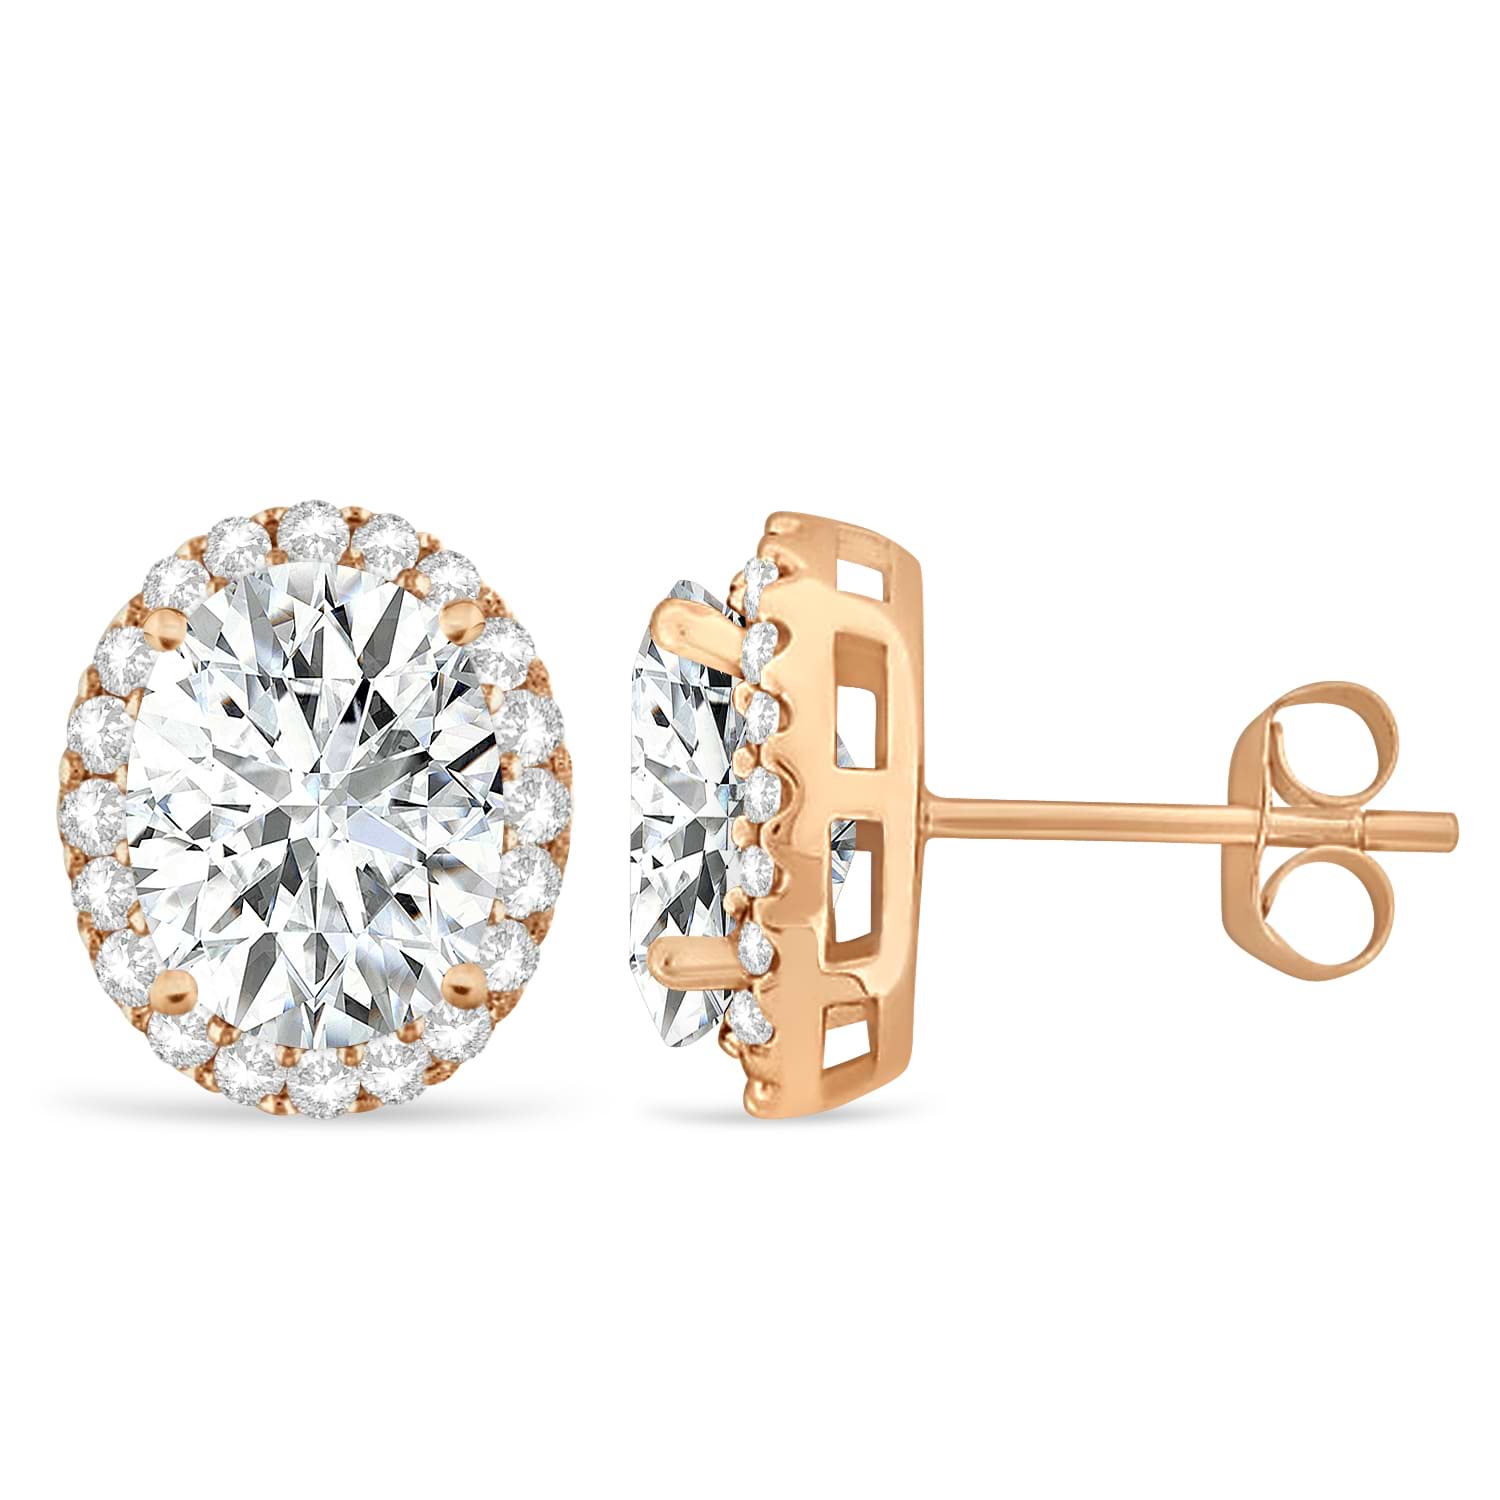 Oval Moissanite & Halo Diamond Stud Earrings 14k Rose Gold 3.82ct